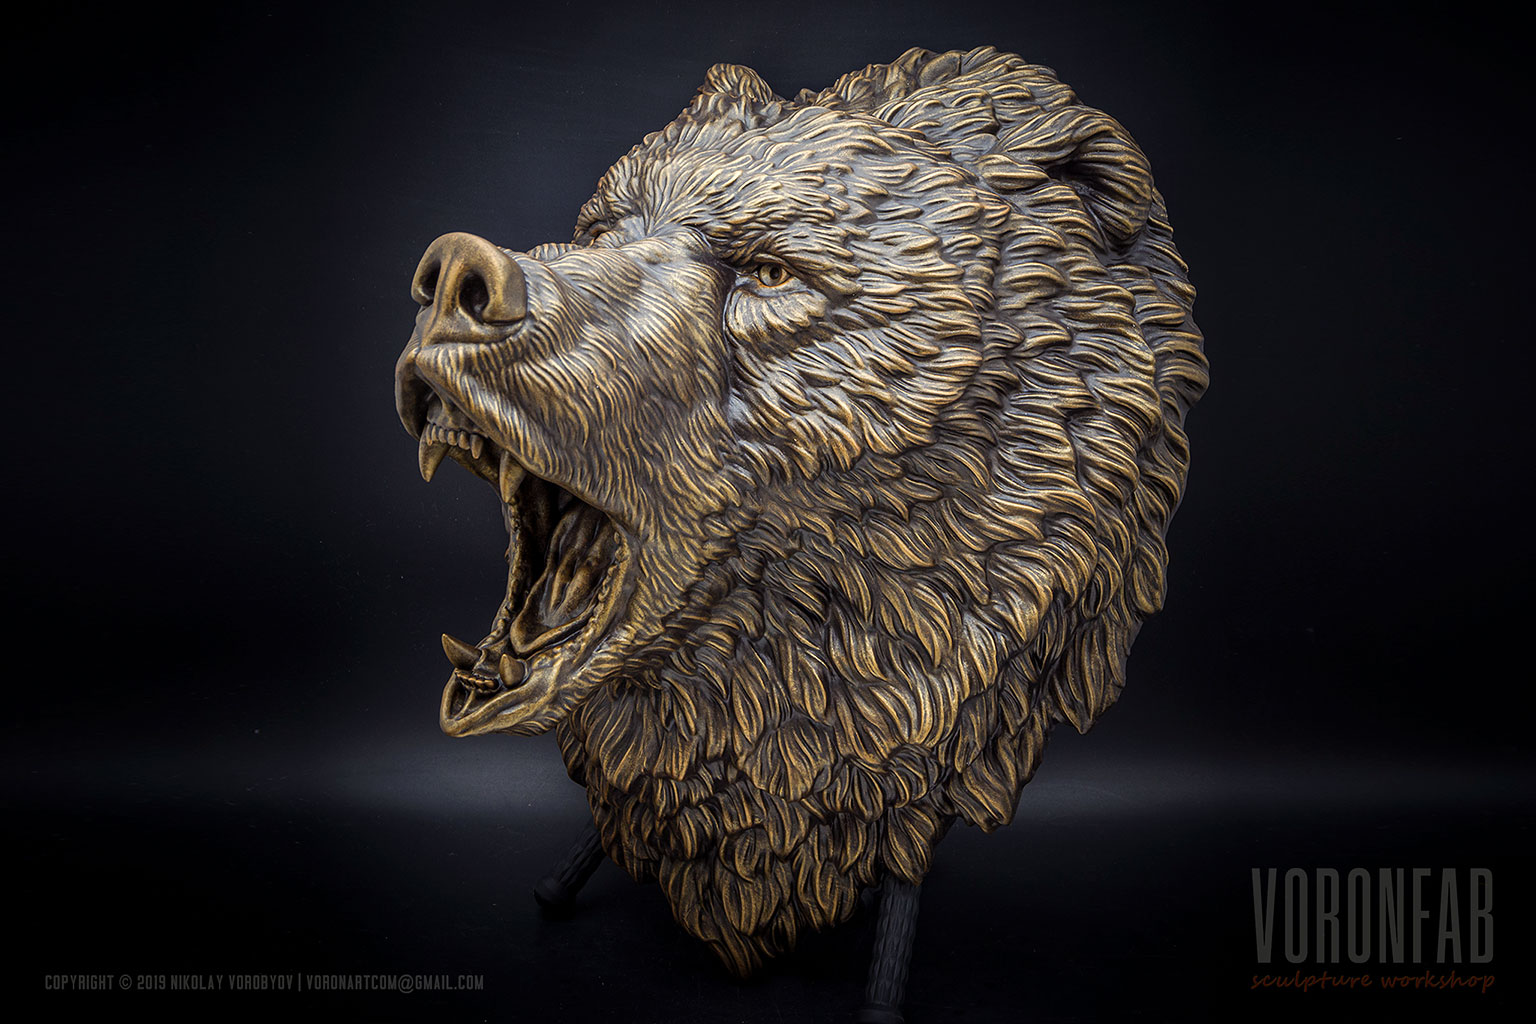 Сердитый Медведь скульптура настенная, домашний декор, арт